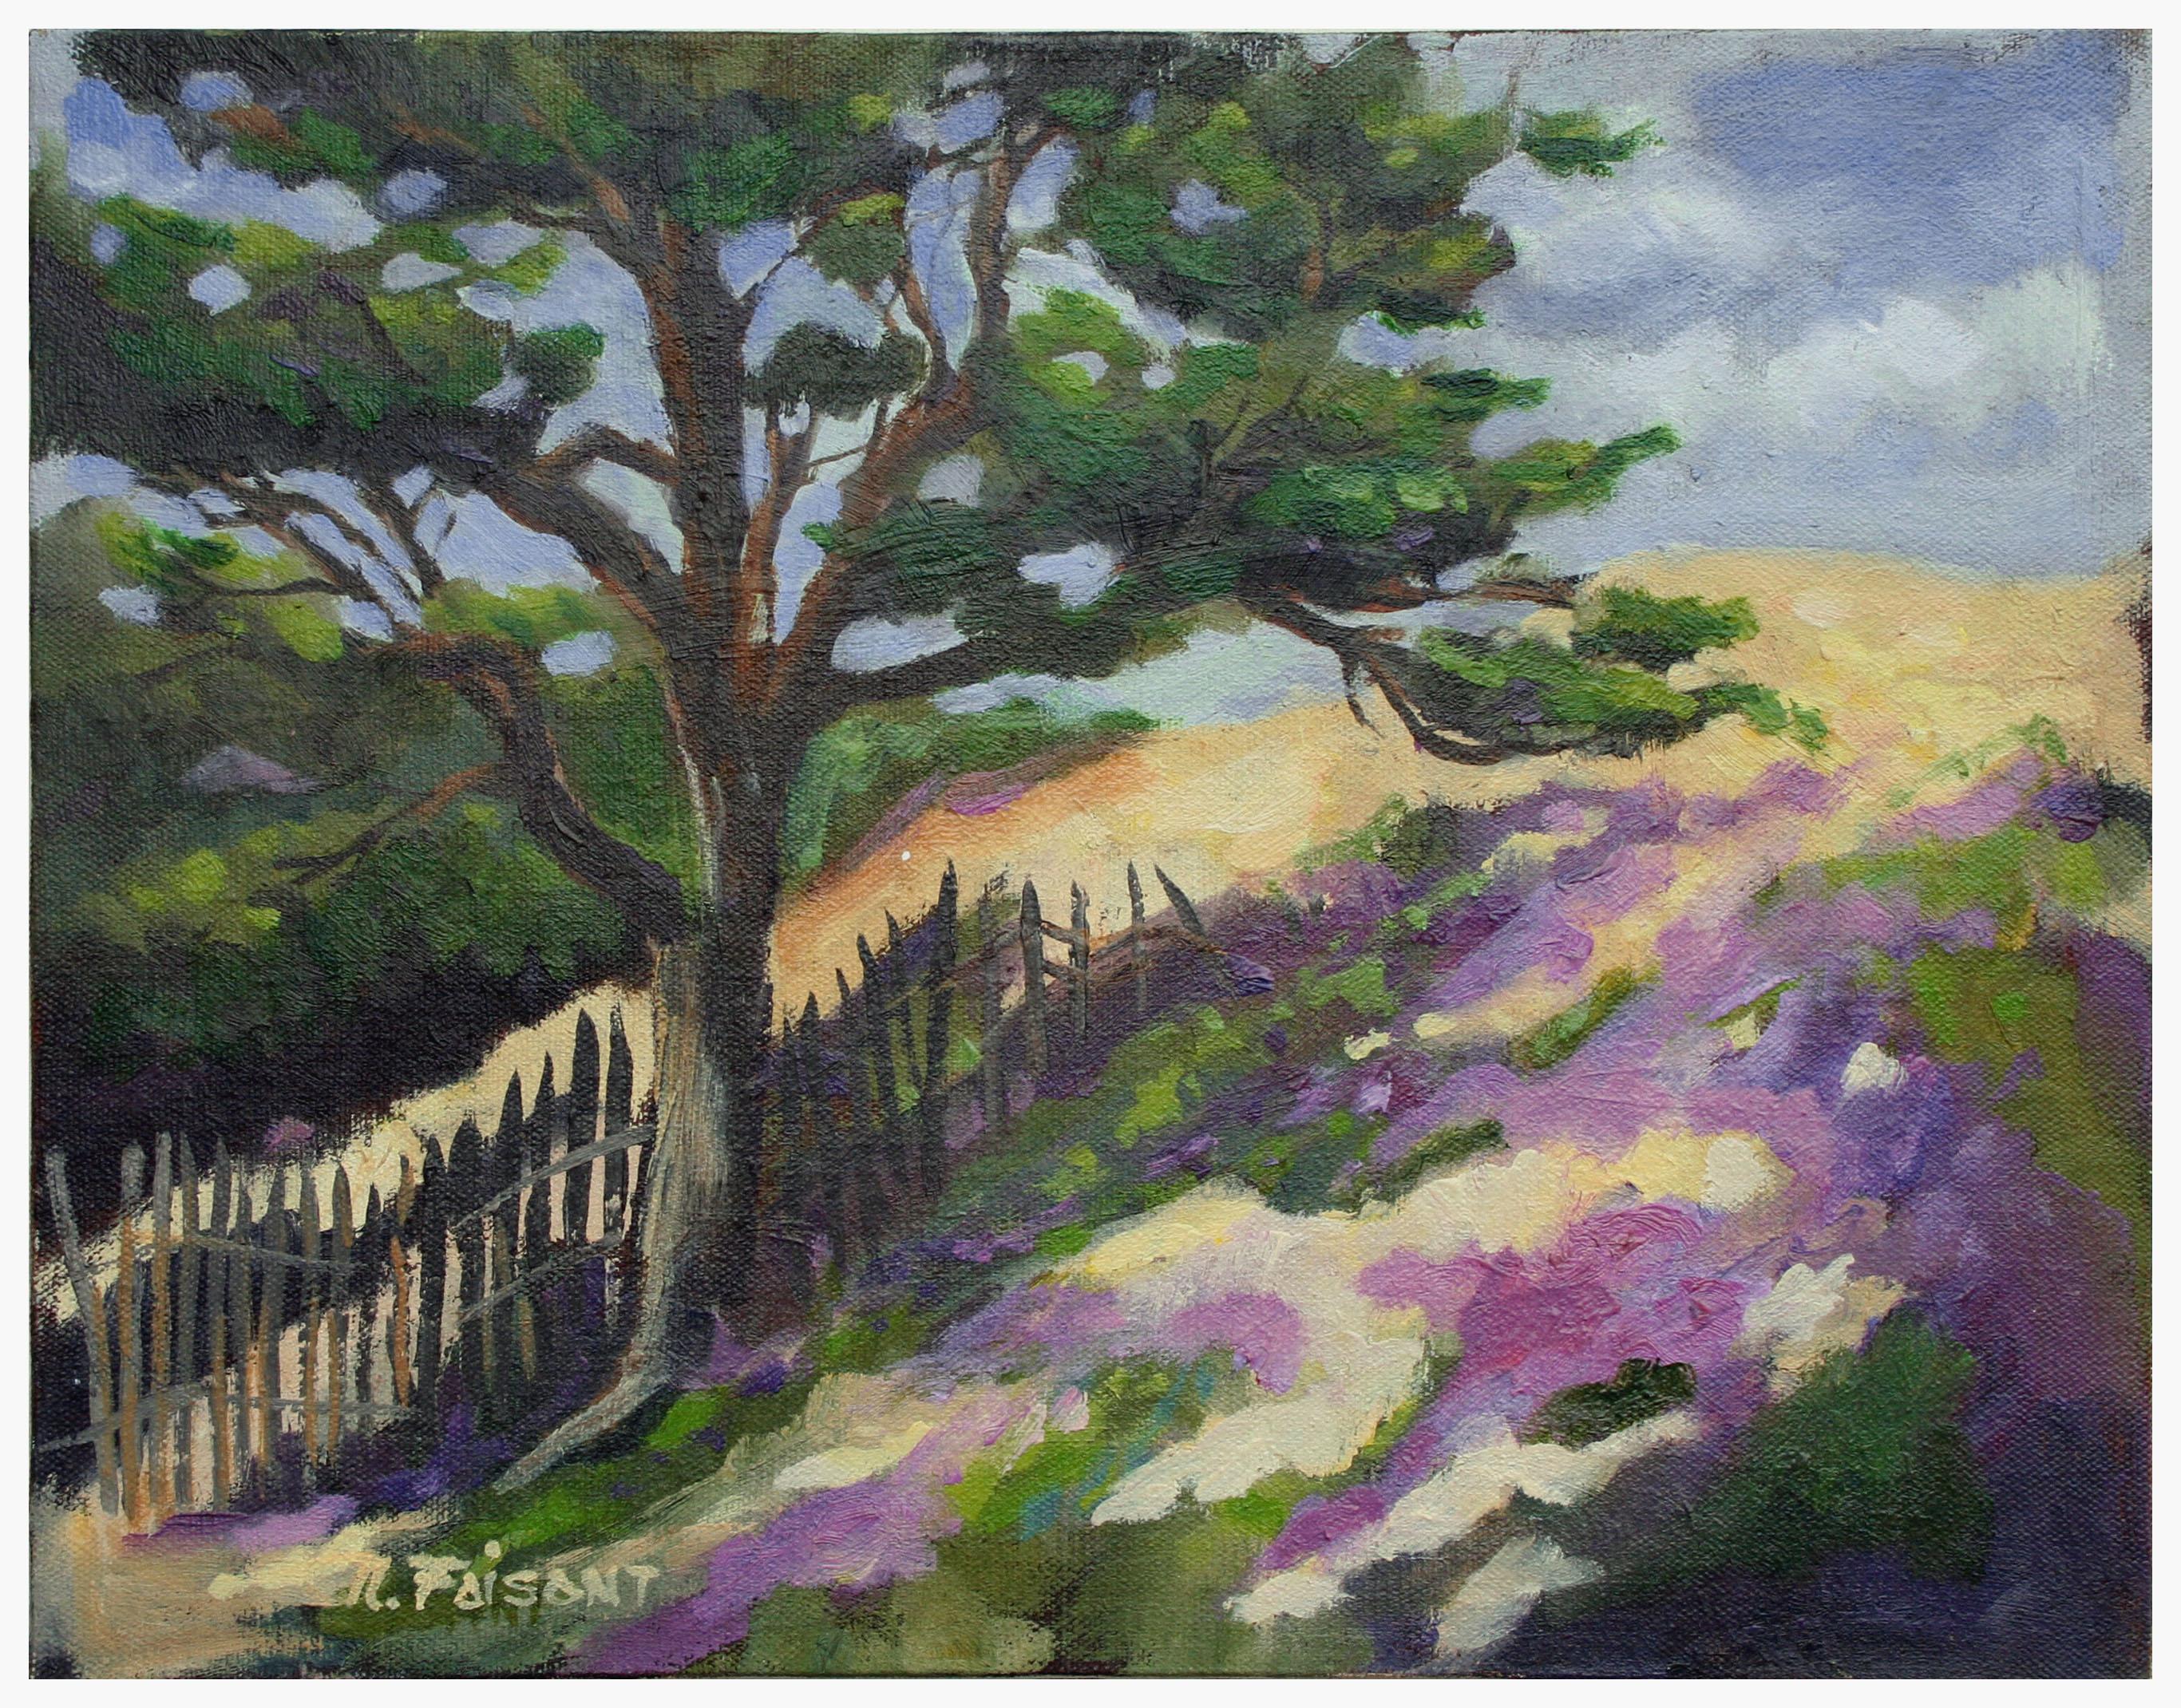 Nancy Faisant Landscape Painting - Monterey Hilltop Cypress Tree Landscape